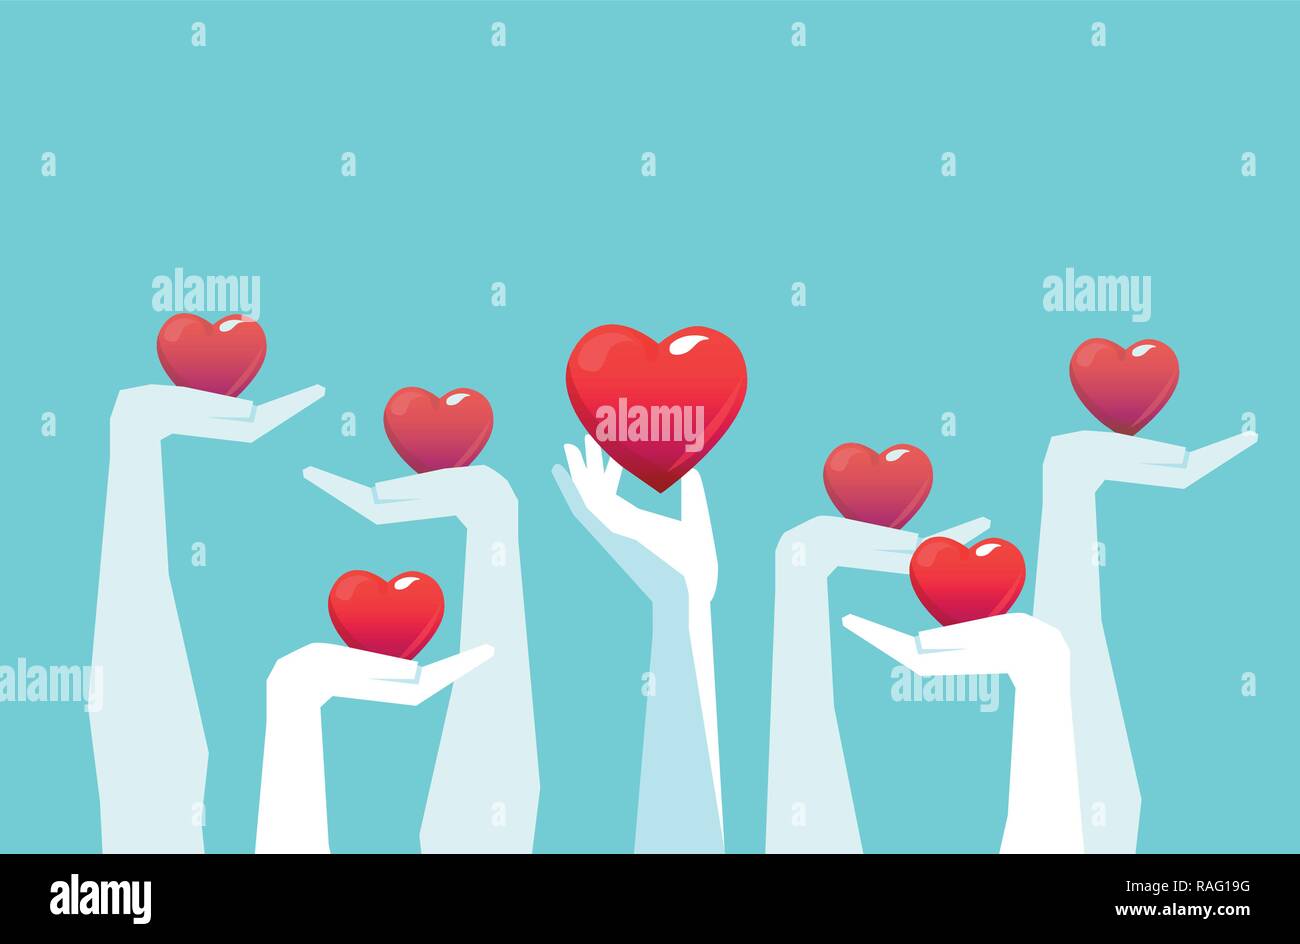 Der Vektor der erhobenen Hände halten die rote Farbe Herz auf hellblauem Hintergrund isoliert. Liebe Freiwilligenarbeit Abstimmung Konzept. Stock Vektor